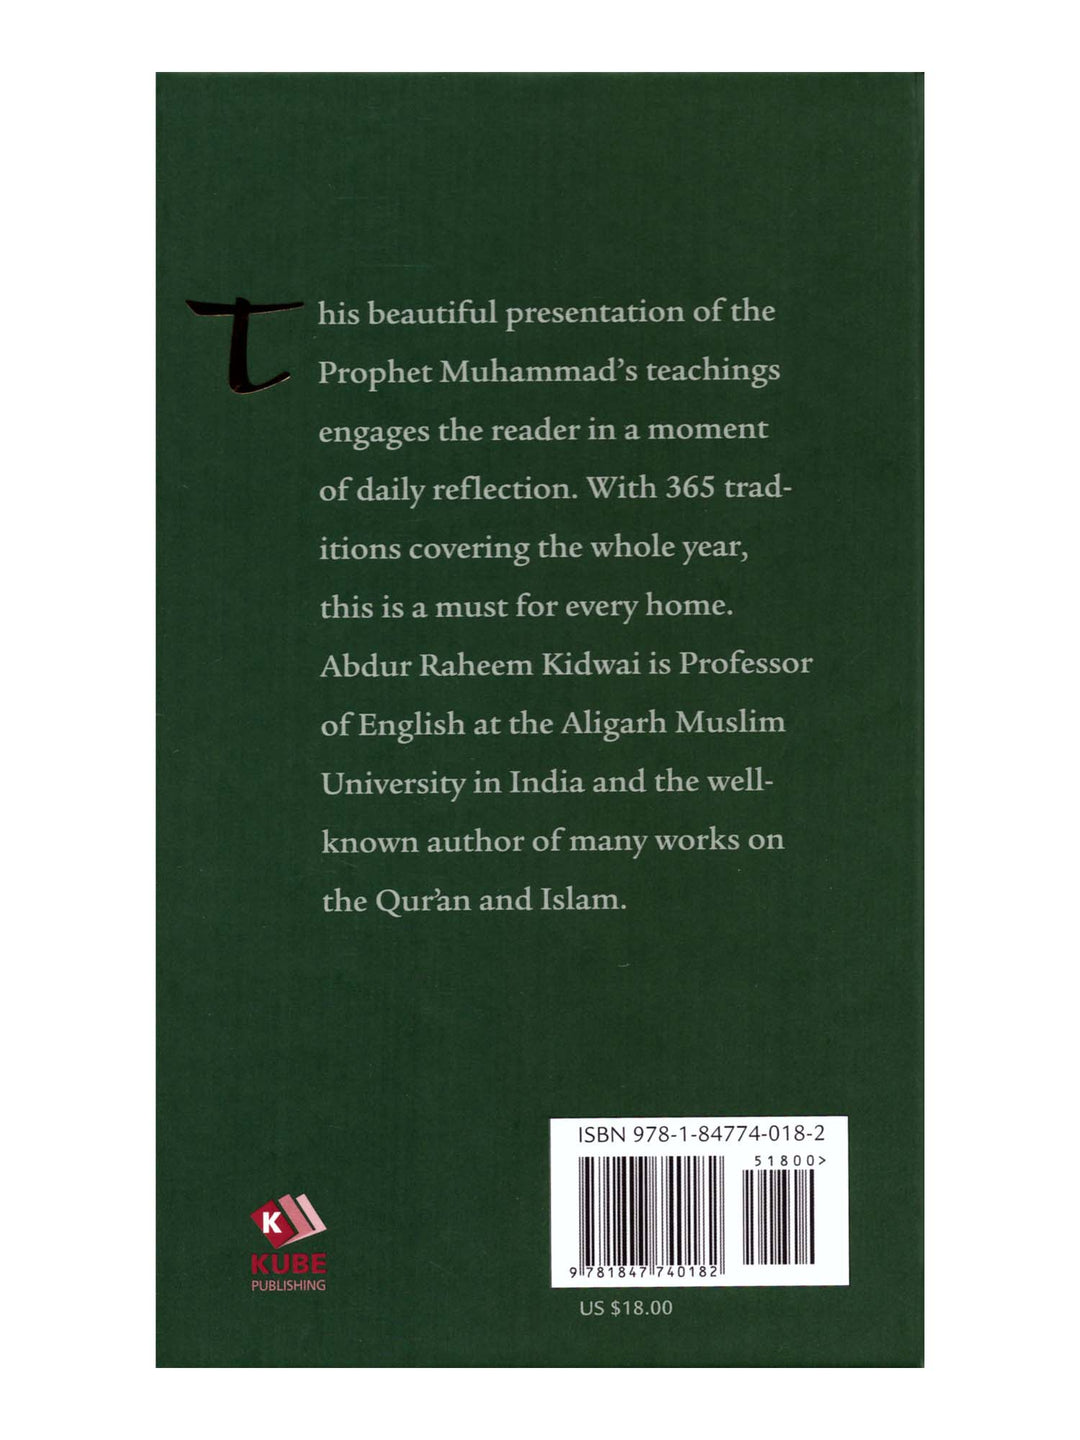 حكمة يومية - أحاديث النبي محمد - عبد الرحيم كيدواي (غلاف مقوى)